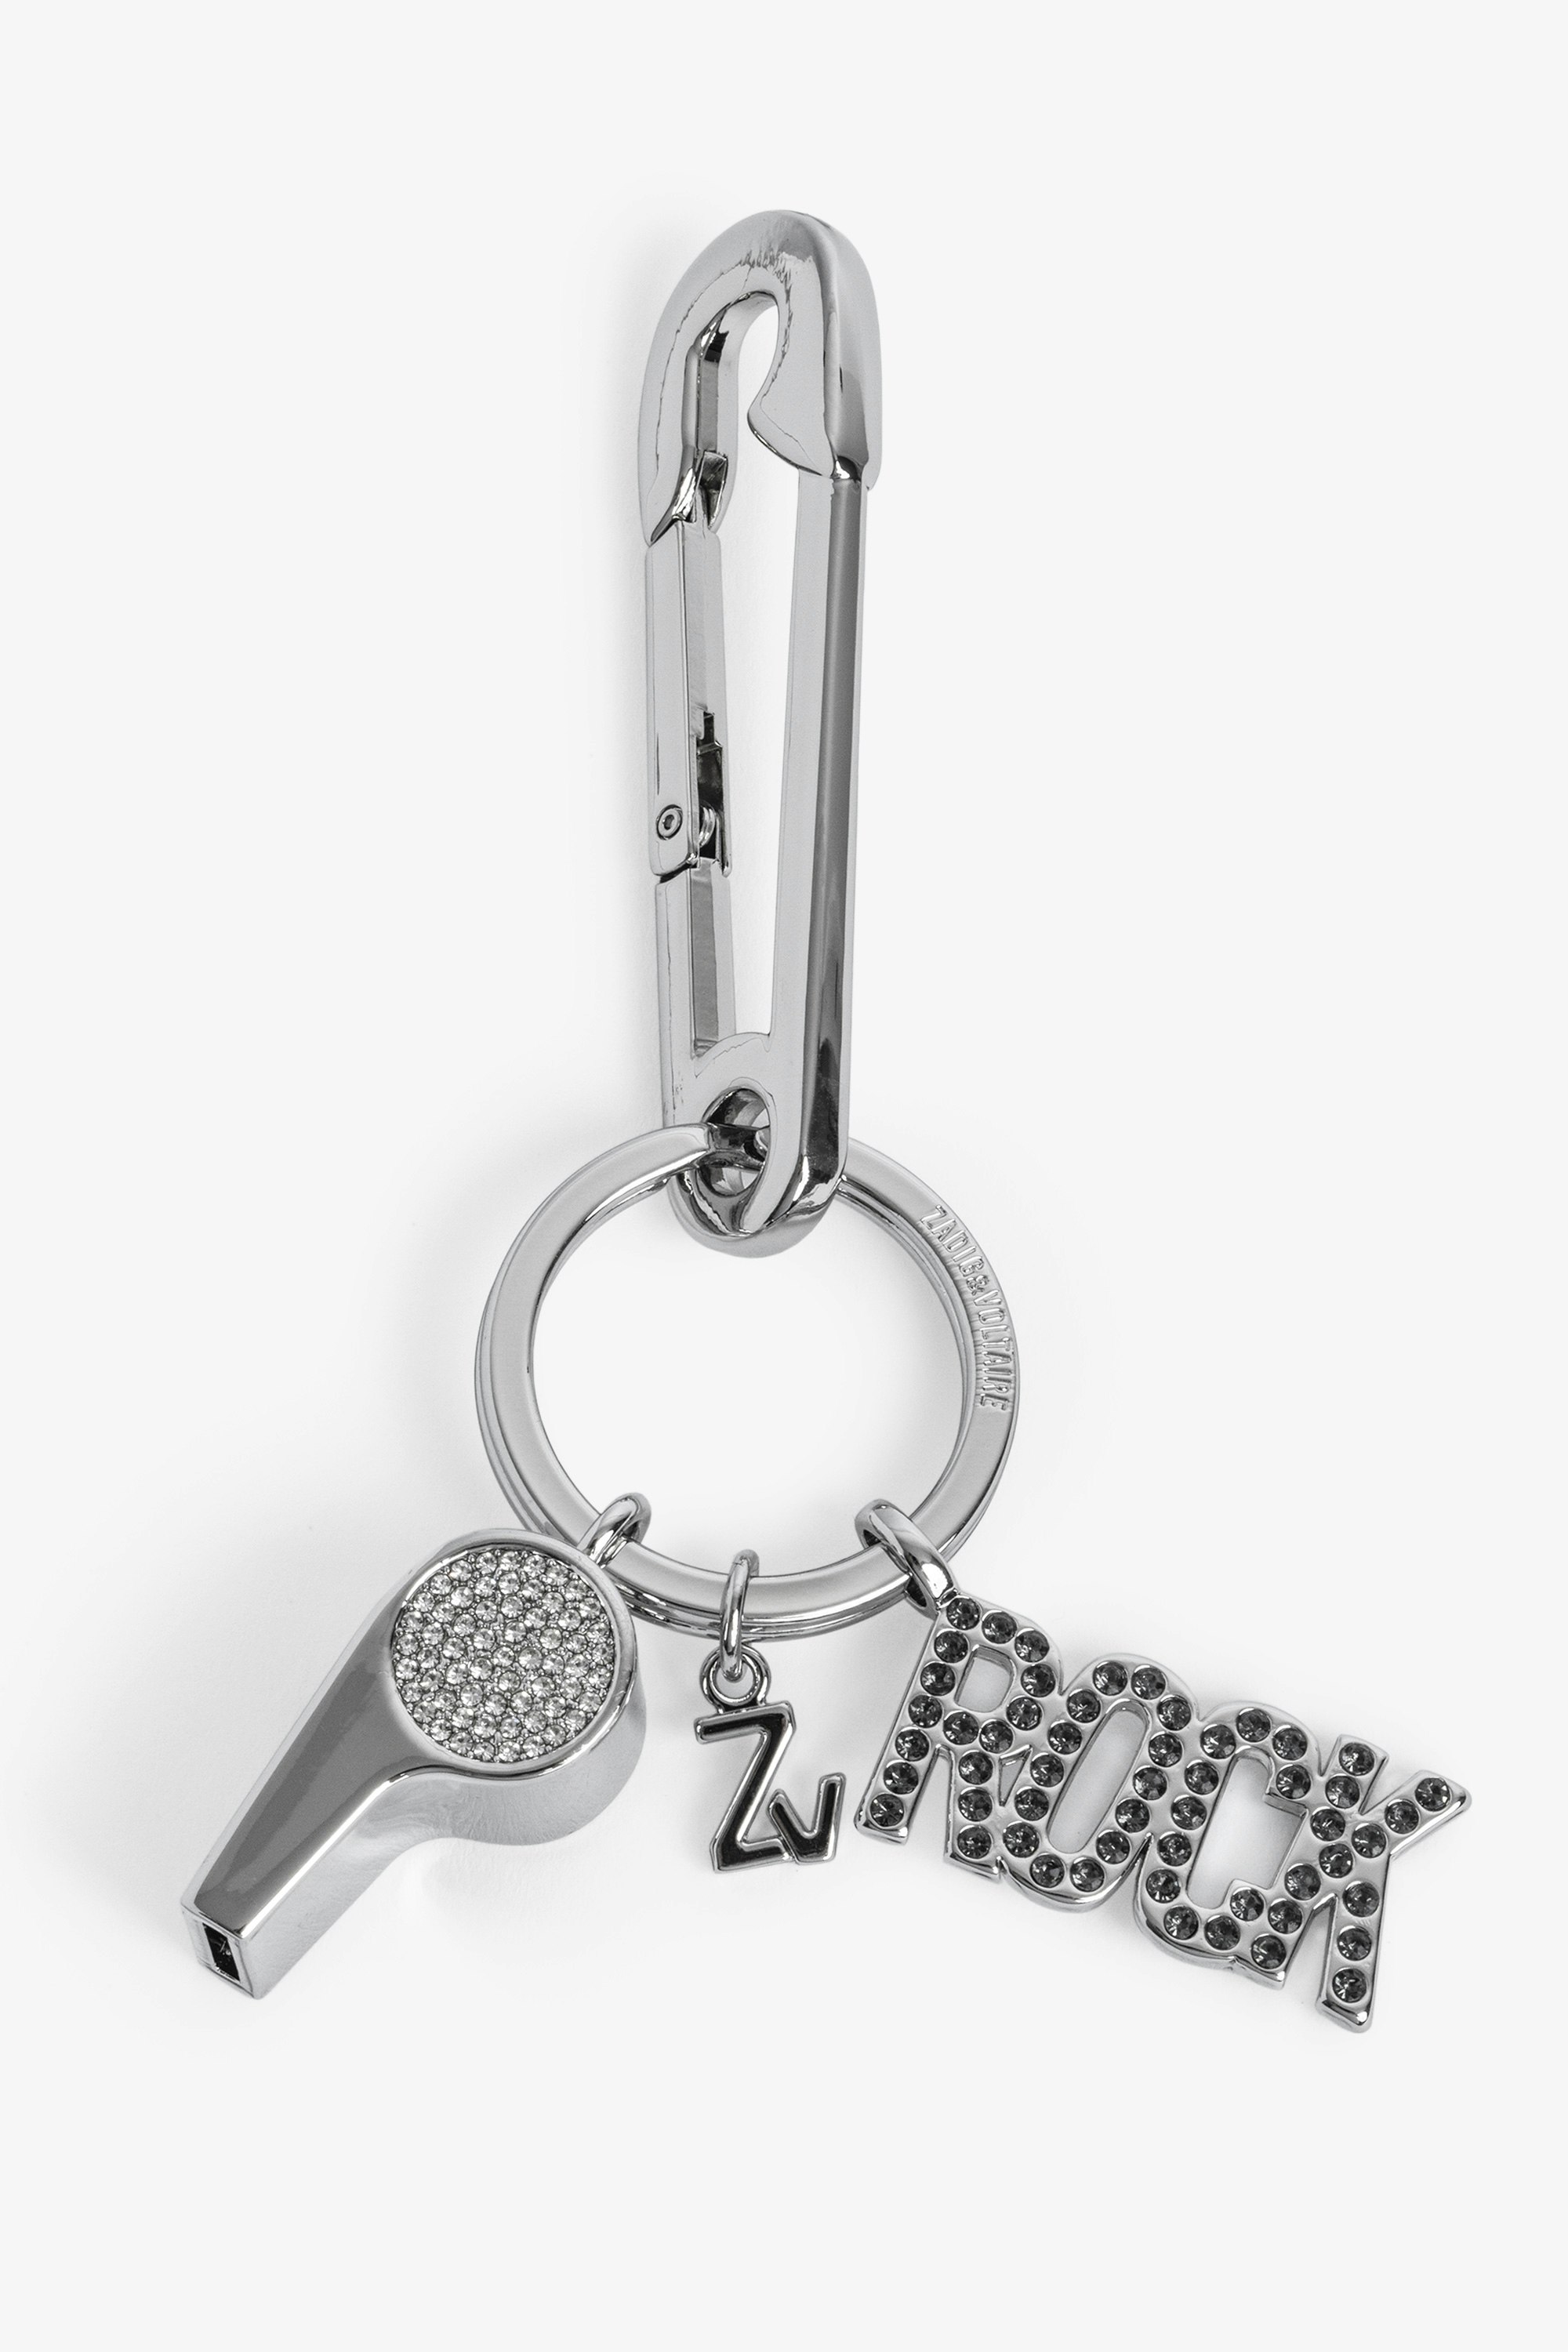 Porte-clés Rock Whistle Keyring Porte-clés en métal muni d'un mousqueton, d'un sifflet et d'un message rock femme